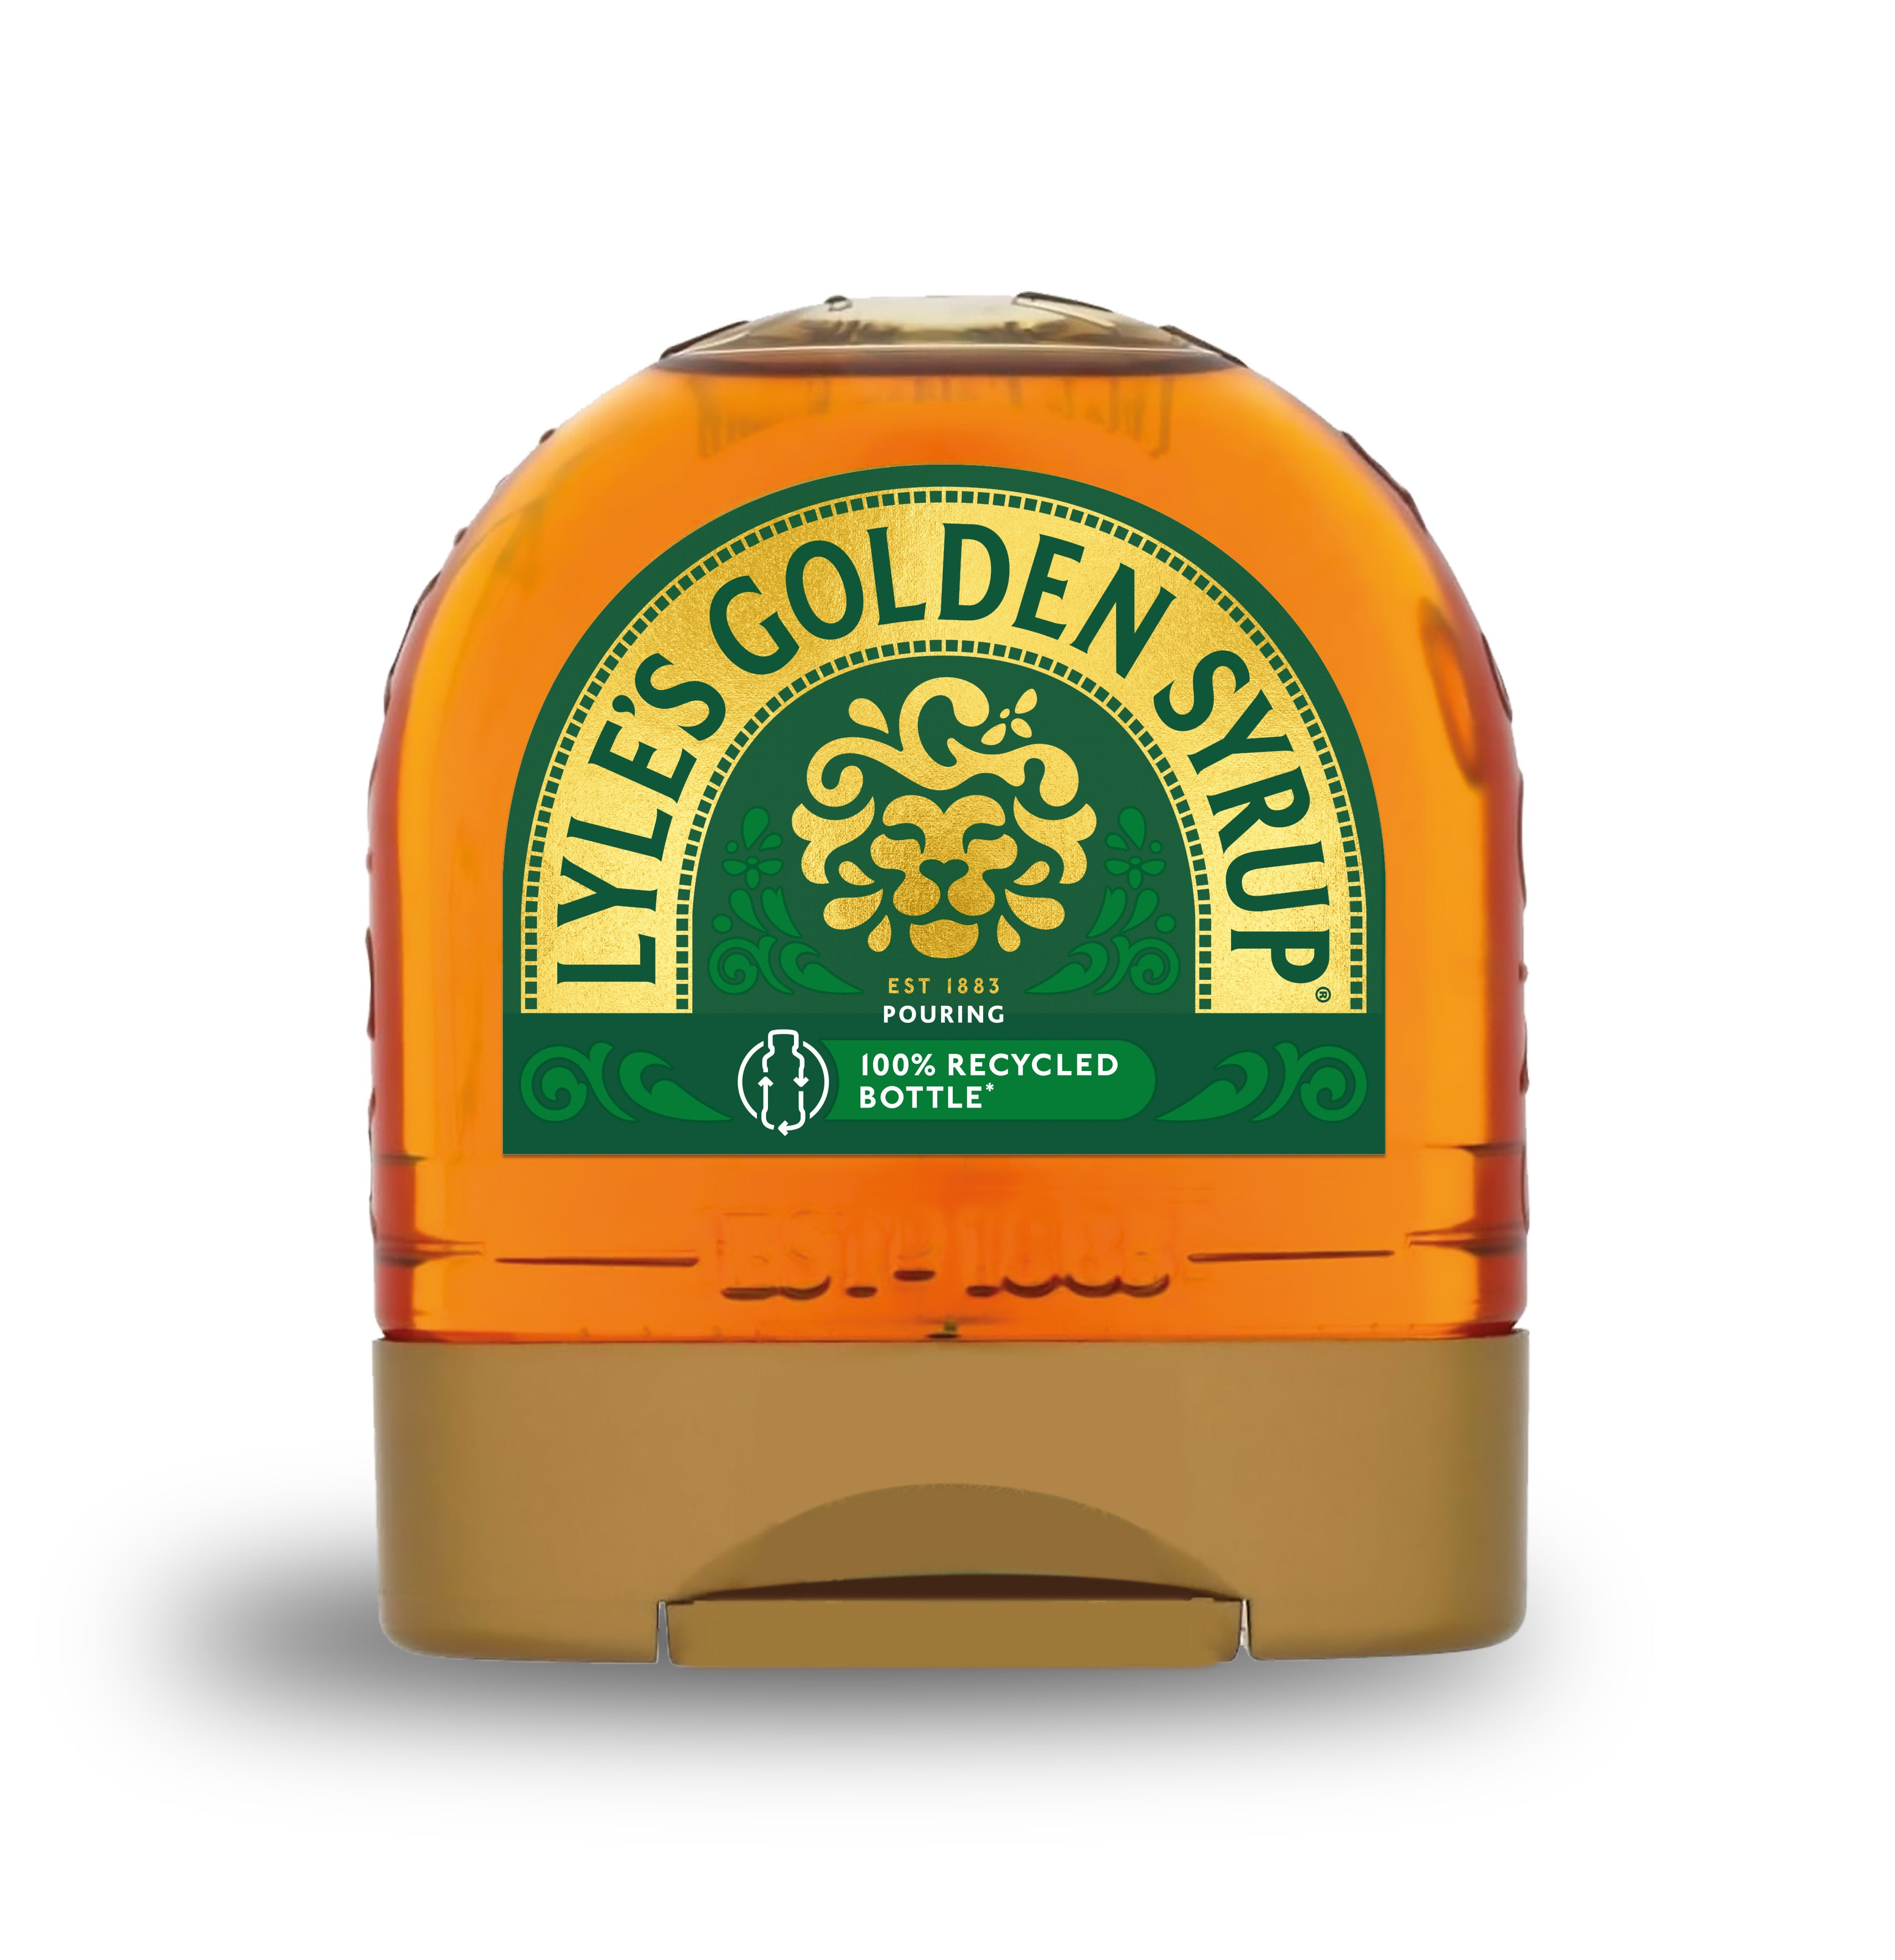 Nuevo logo de Lyle’s Golden Syrup